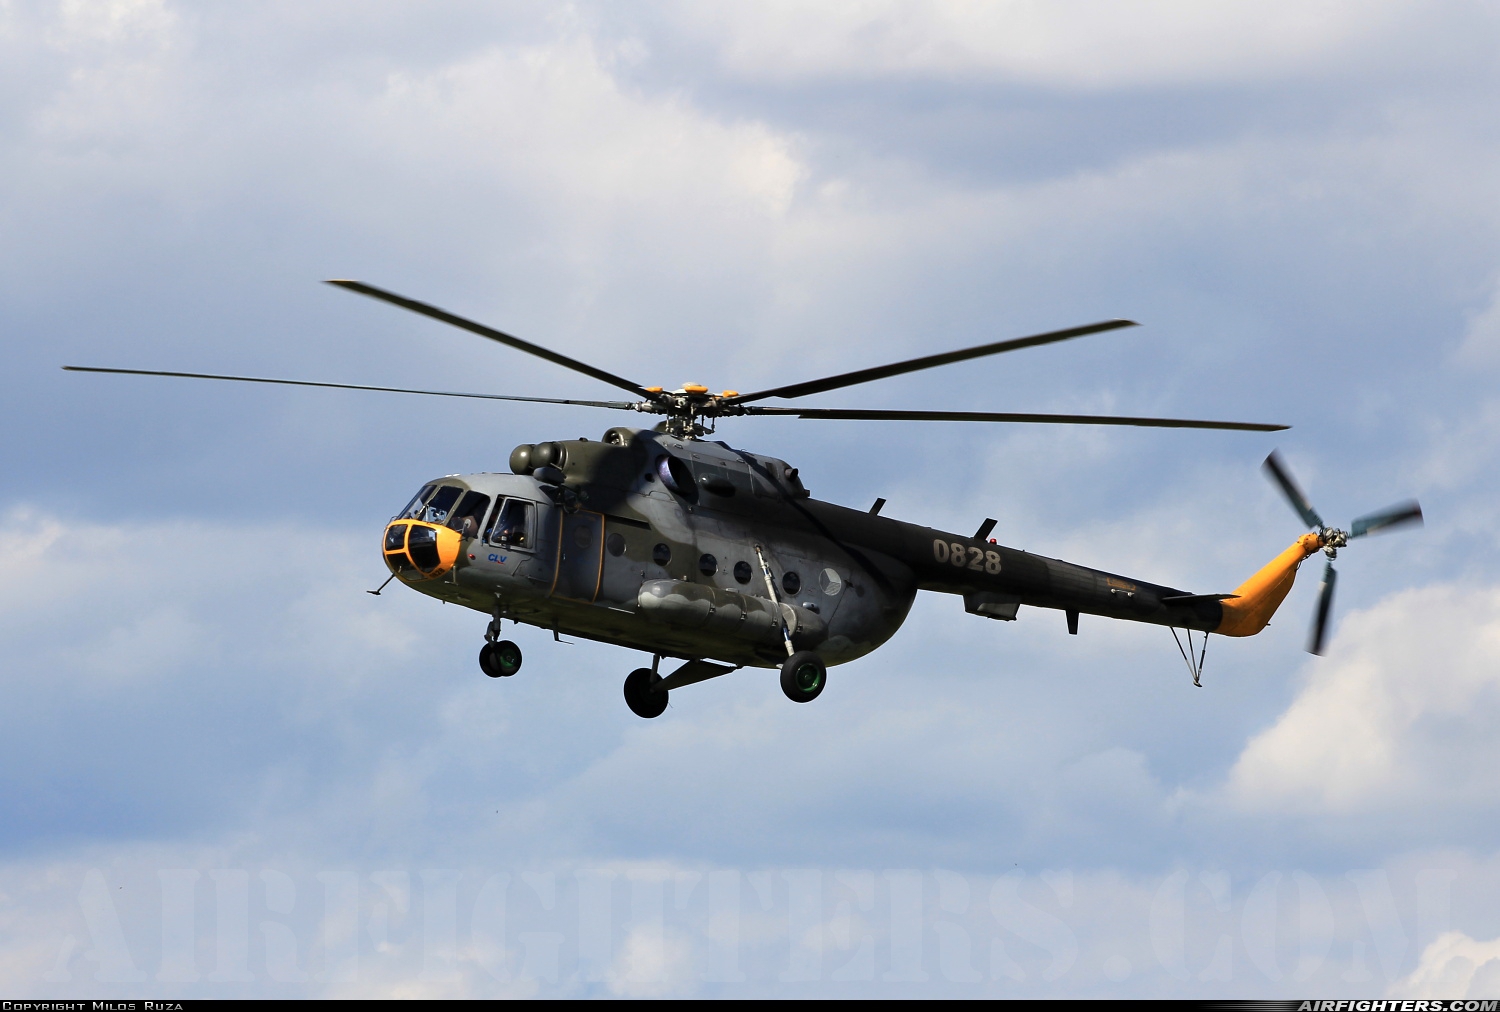 Czech Republic - Air Force Mil Mi-17 0828 at Pardubice (PED / LKPD), Czech Republic